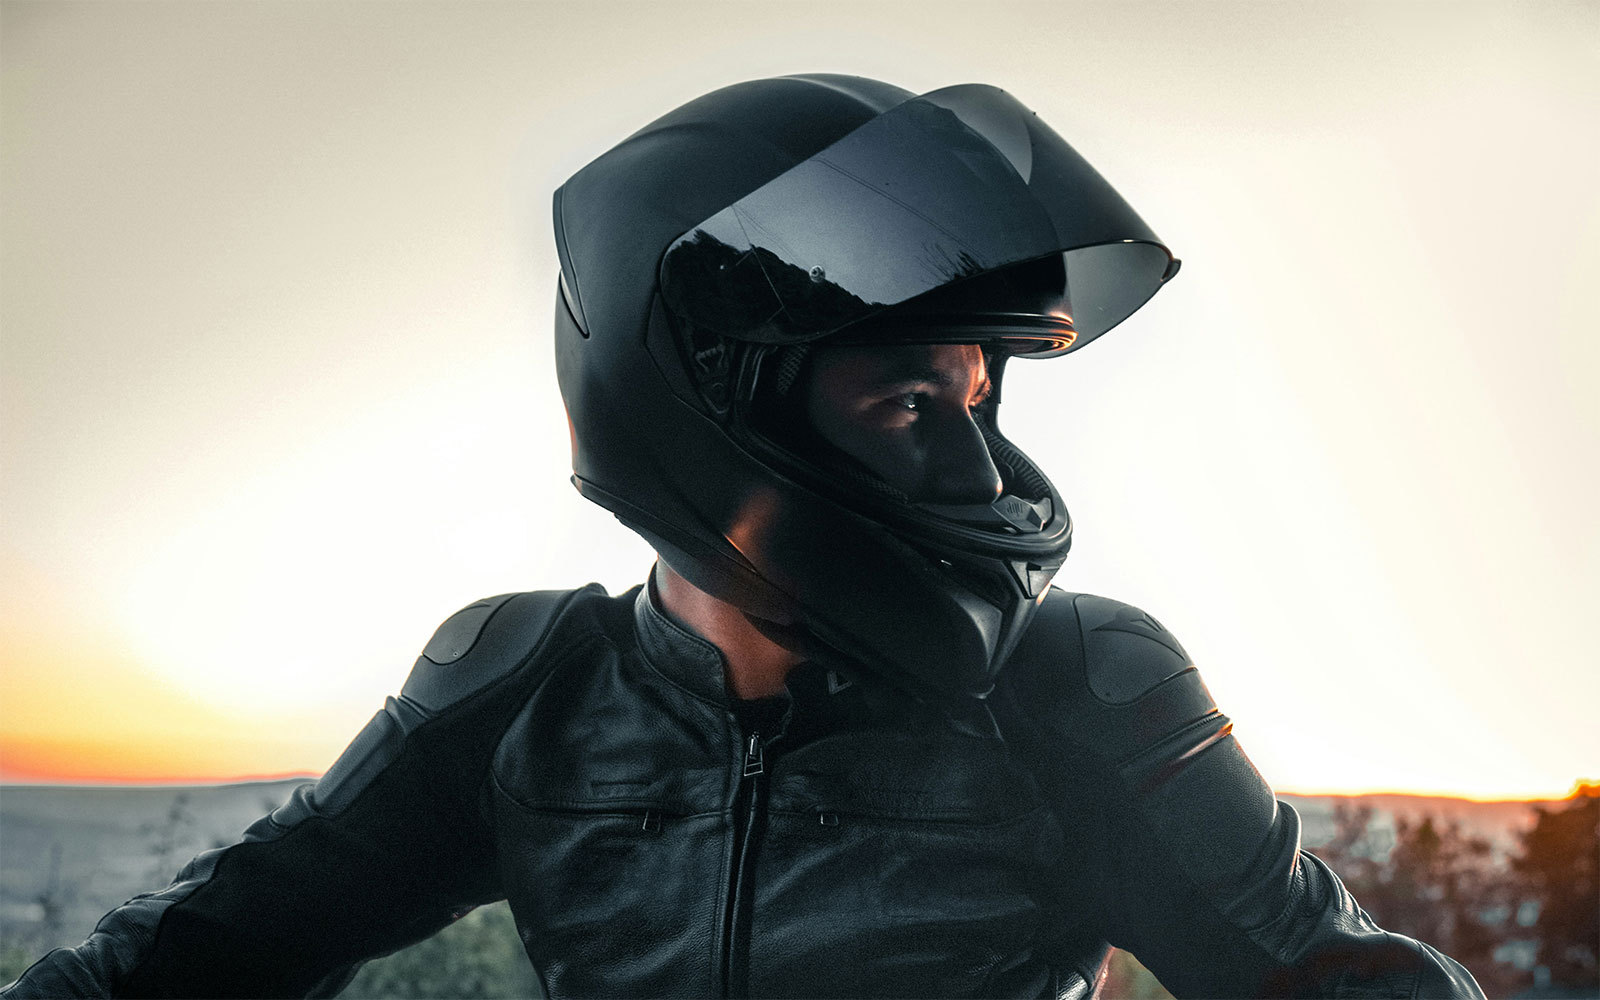 Ein Motorradfahrer in einer schwarzen Lederkombi blickt aus seinem Helm